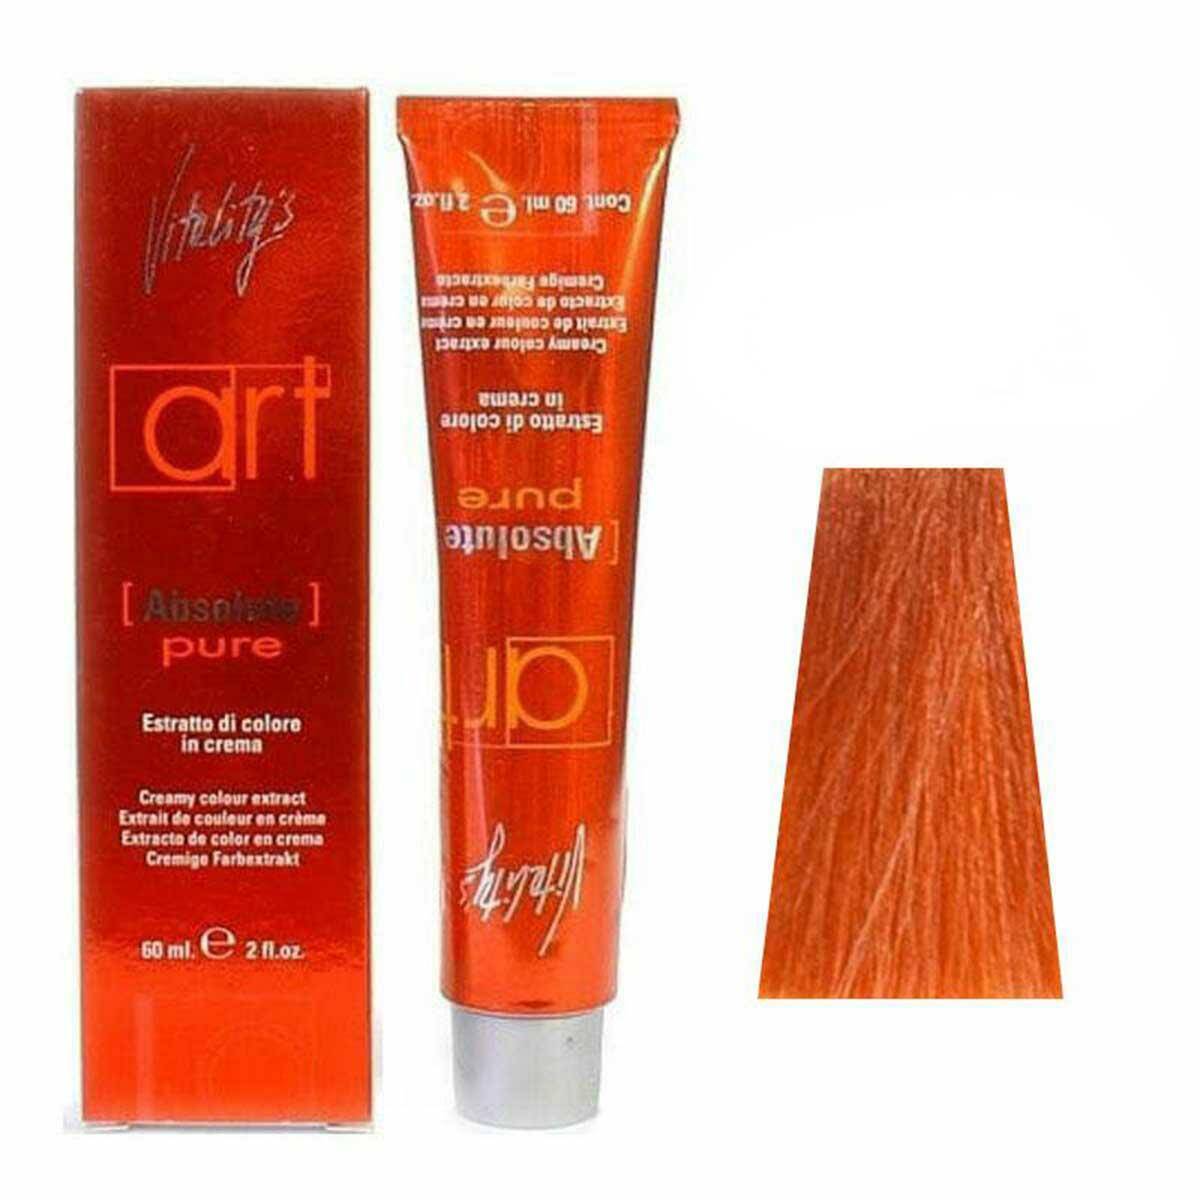 Vitalitys Absolute Pure Farba do włosów - ORANGE - Pomarańczowy, ekstrakt koloru w kremie 60ml